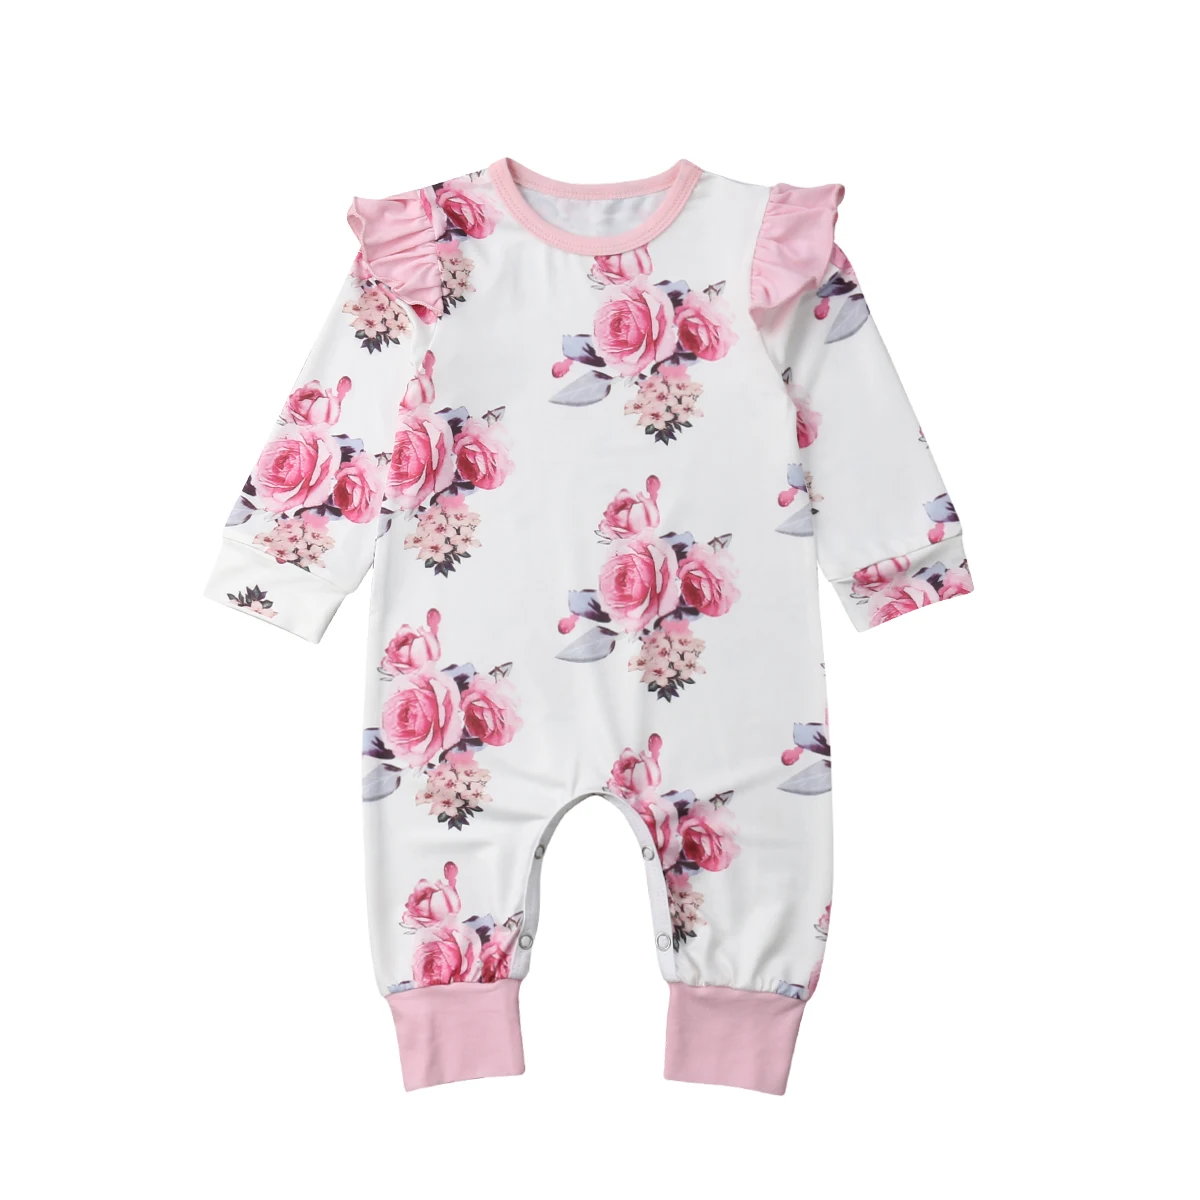 Брендовый комбинезон с длинными рукавами и цветочным принтом для новорожденных девочек, молочный шелк, Размер 0-18 мес